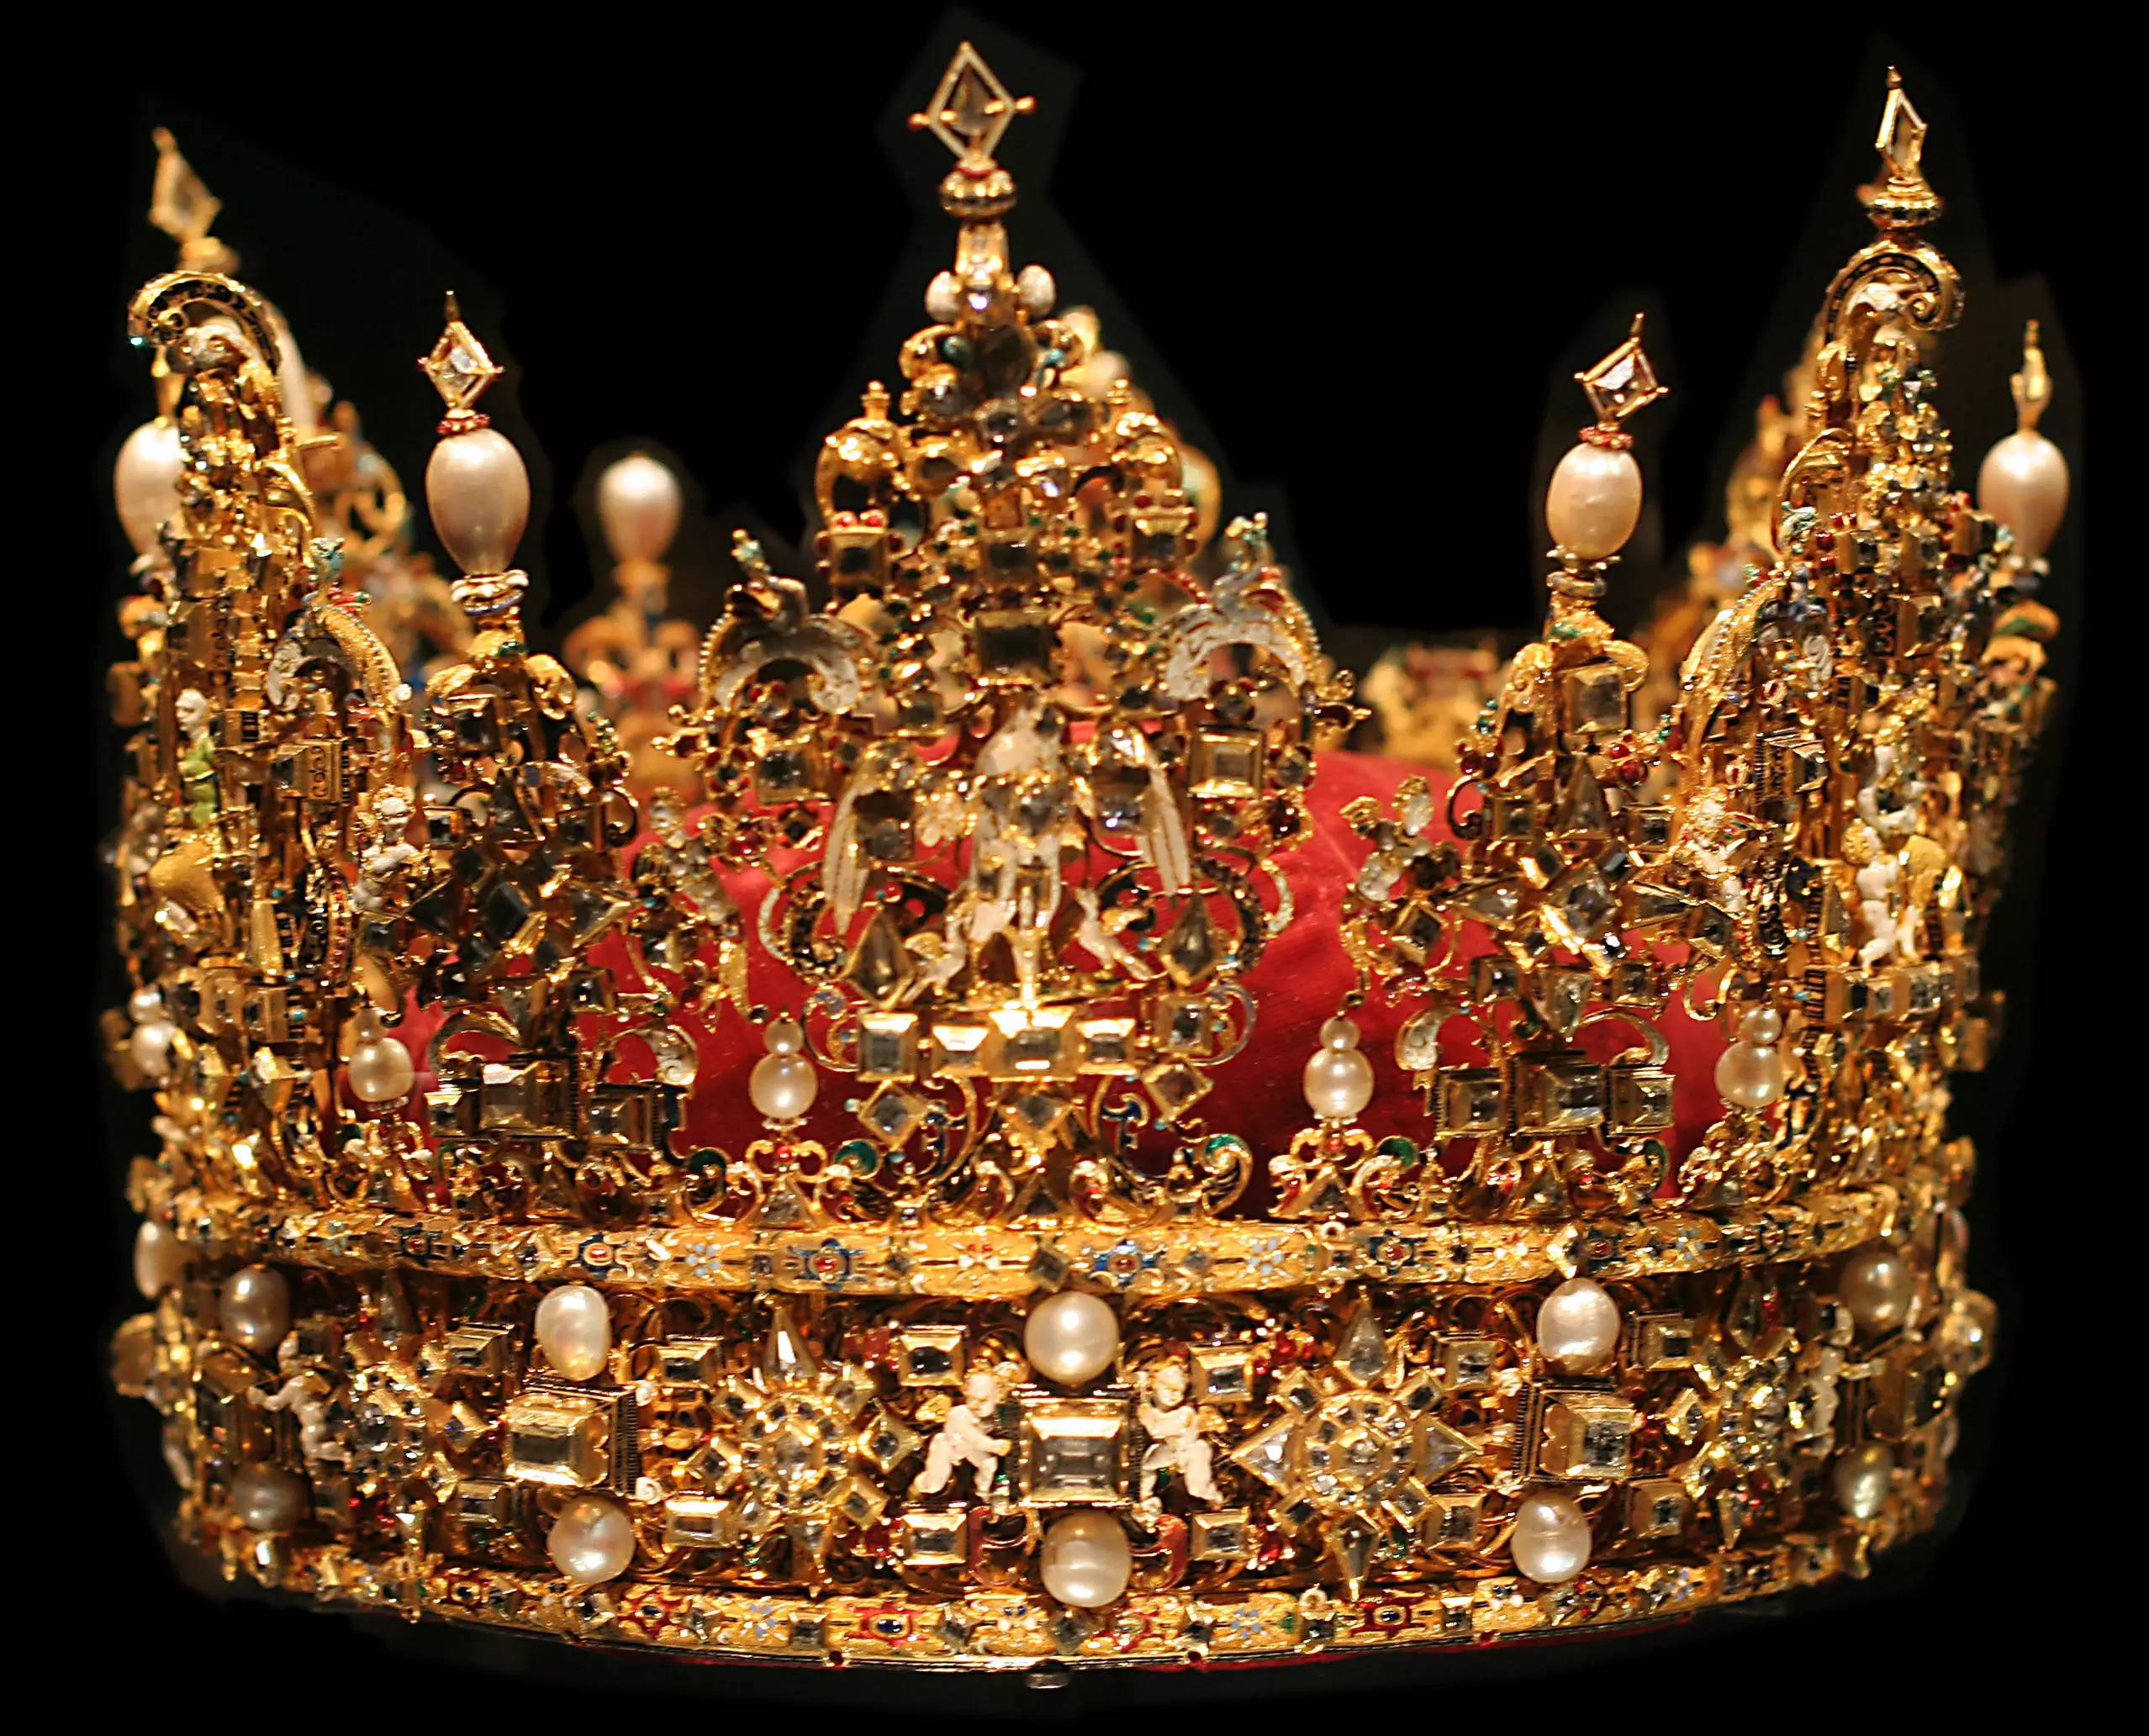 德国王室王冠图片